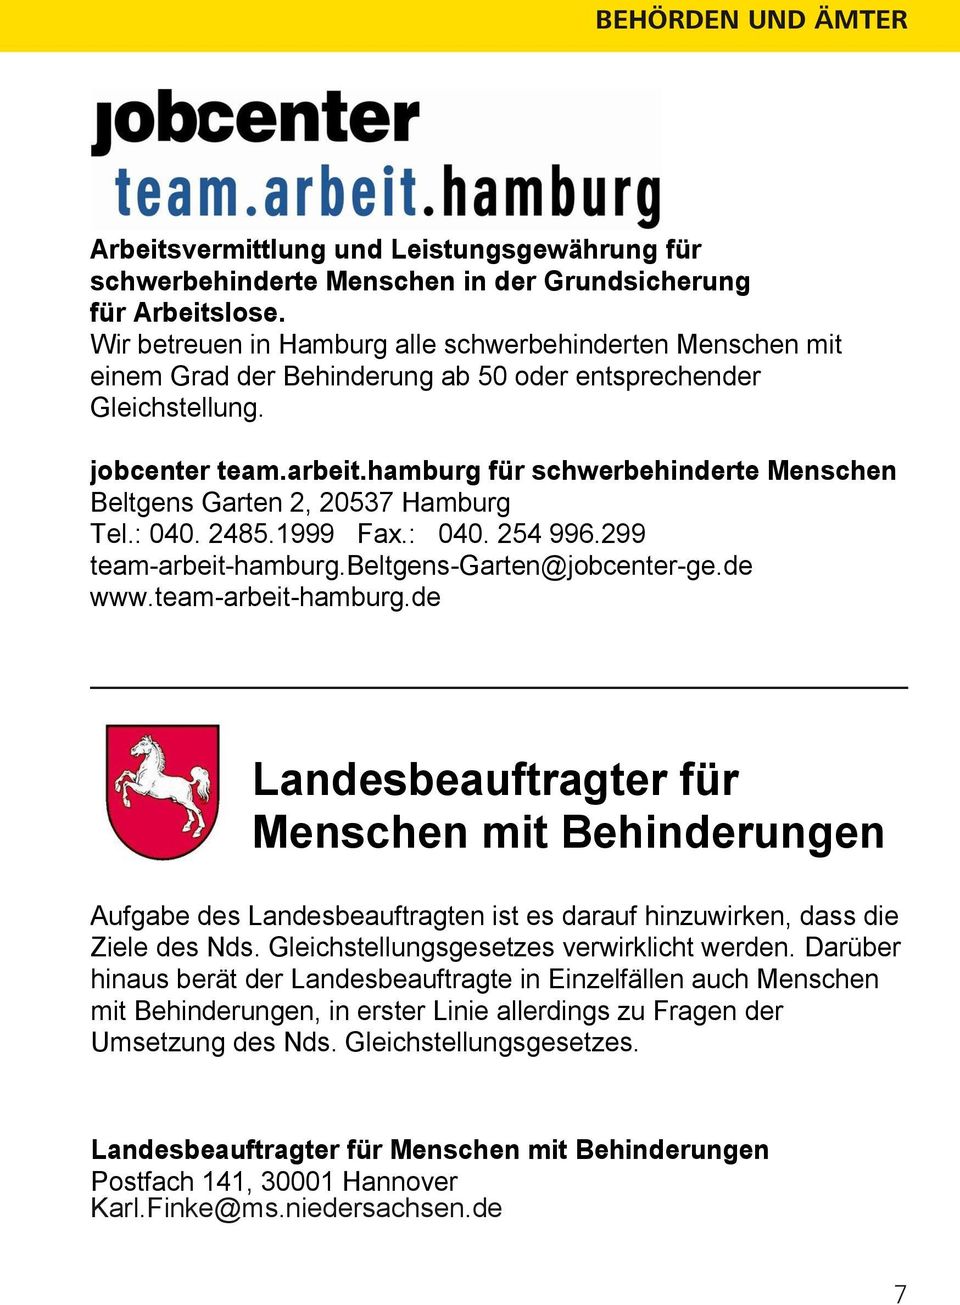 hamburg für schwerbehinderte Menschen Beltgens Garten 2, 20537 Hamburg Tel.: 040. 2485.1999 Fax.: 040. 254 996.299 team-arbeit-hamburg.